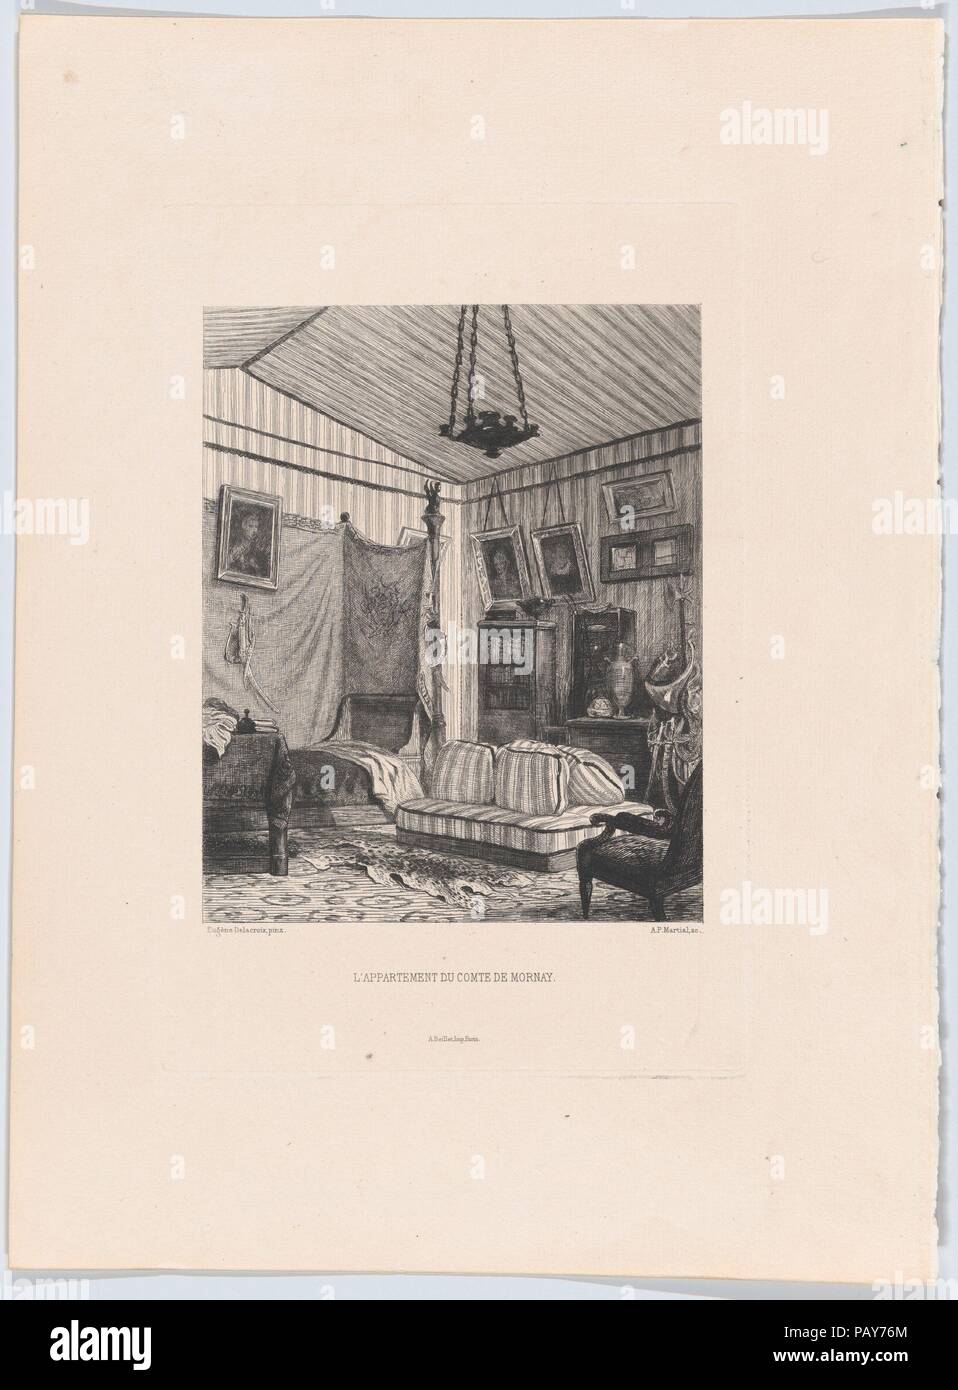 L'appartement du Comte de Mornay. Artist: After Eugène Delacroix (French, Charenton-Saint-Maurice 1798-1863 Paris). Dimensions: Plate: 9 1/4 × 6 3/16 in. (23.5 × 15.7 cm)  Sheet: 13 3/8 × 9 13/16 in. (34 × 25 cm). Etcher: Adolphe Martial Potémont (French, Paris 1828-1883 Paris). Publisher: A. Beillet (French, active 19th century). Date: 1873. Museum: Metropolitan Museum of Art, New York, USA. Stock Photo